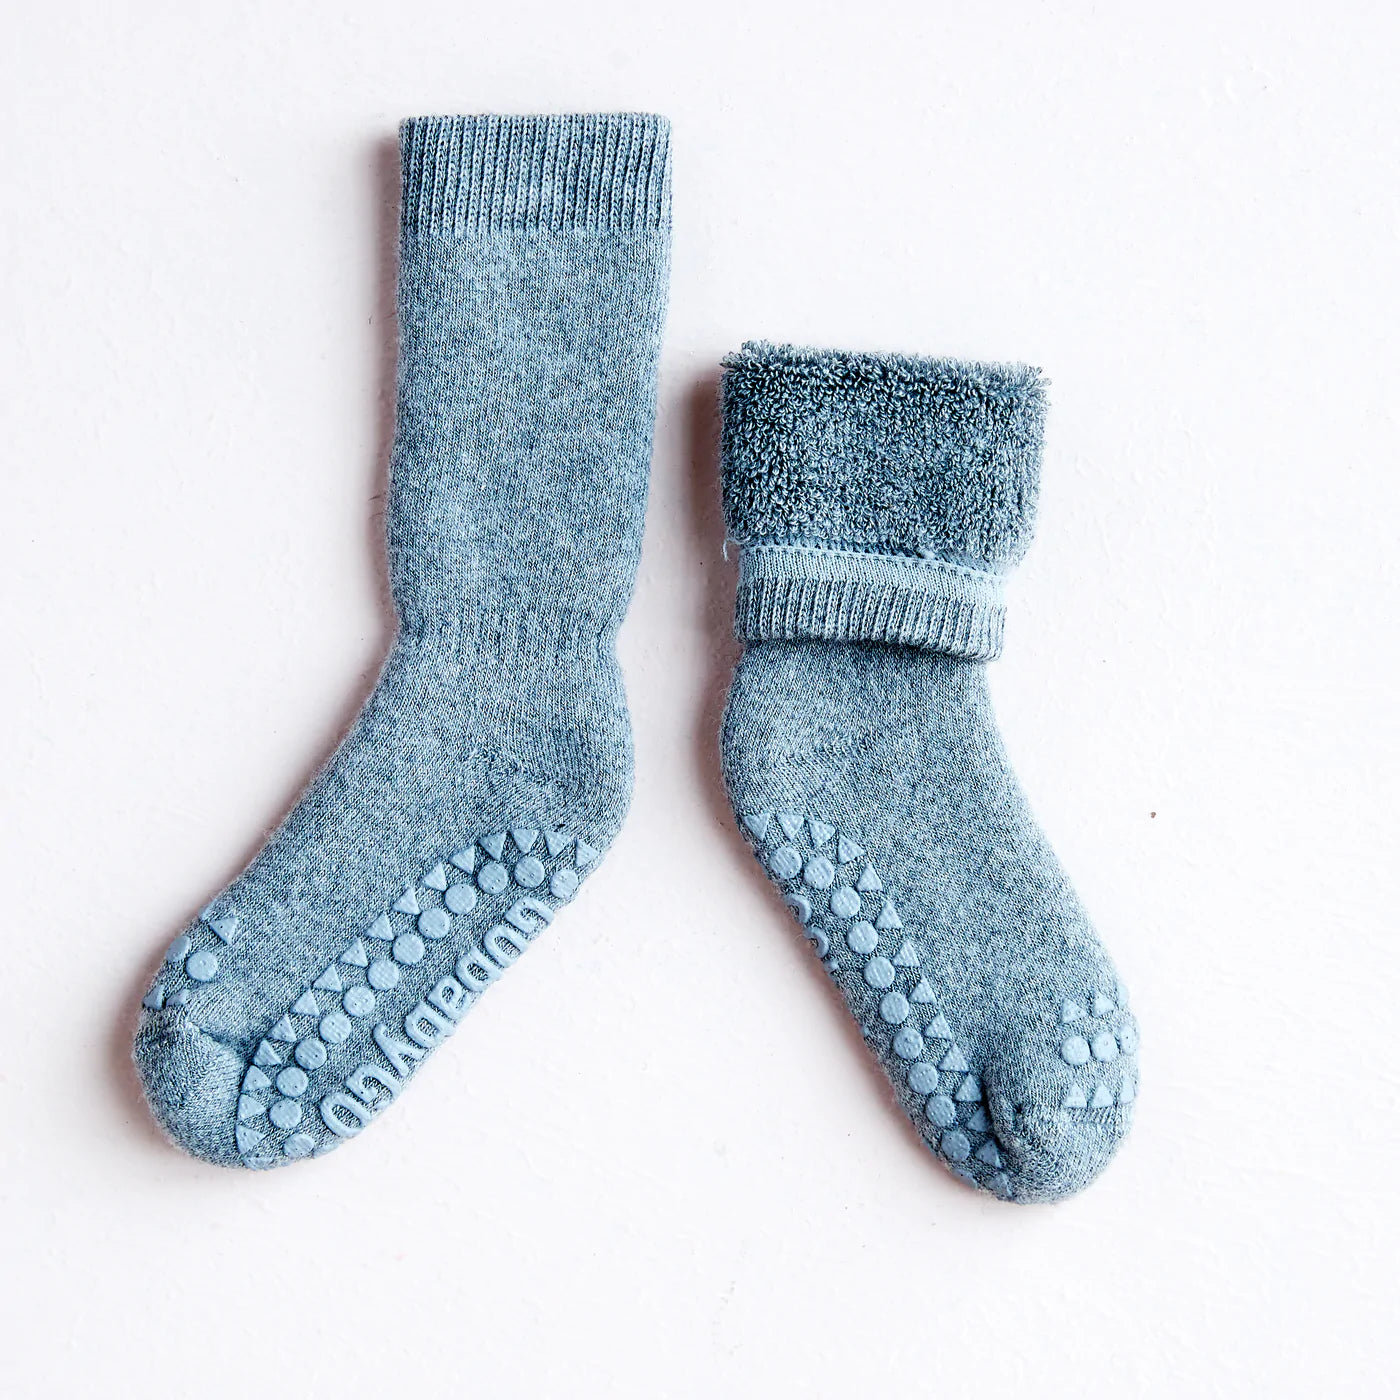 GoBabyGo Rutschfeste Socken aus Baumwolle sky blue